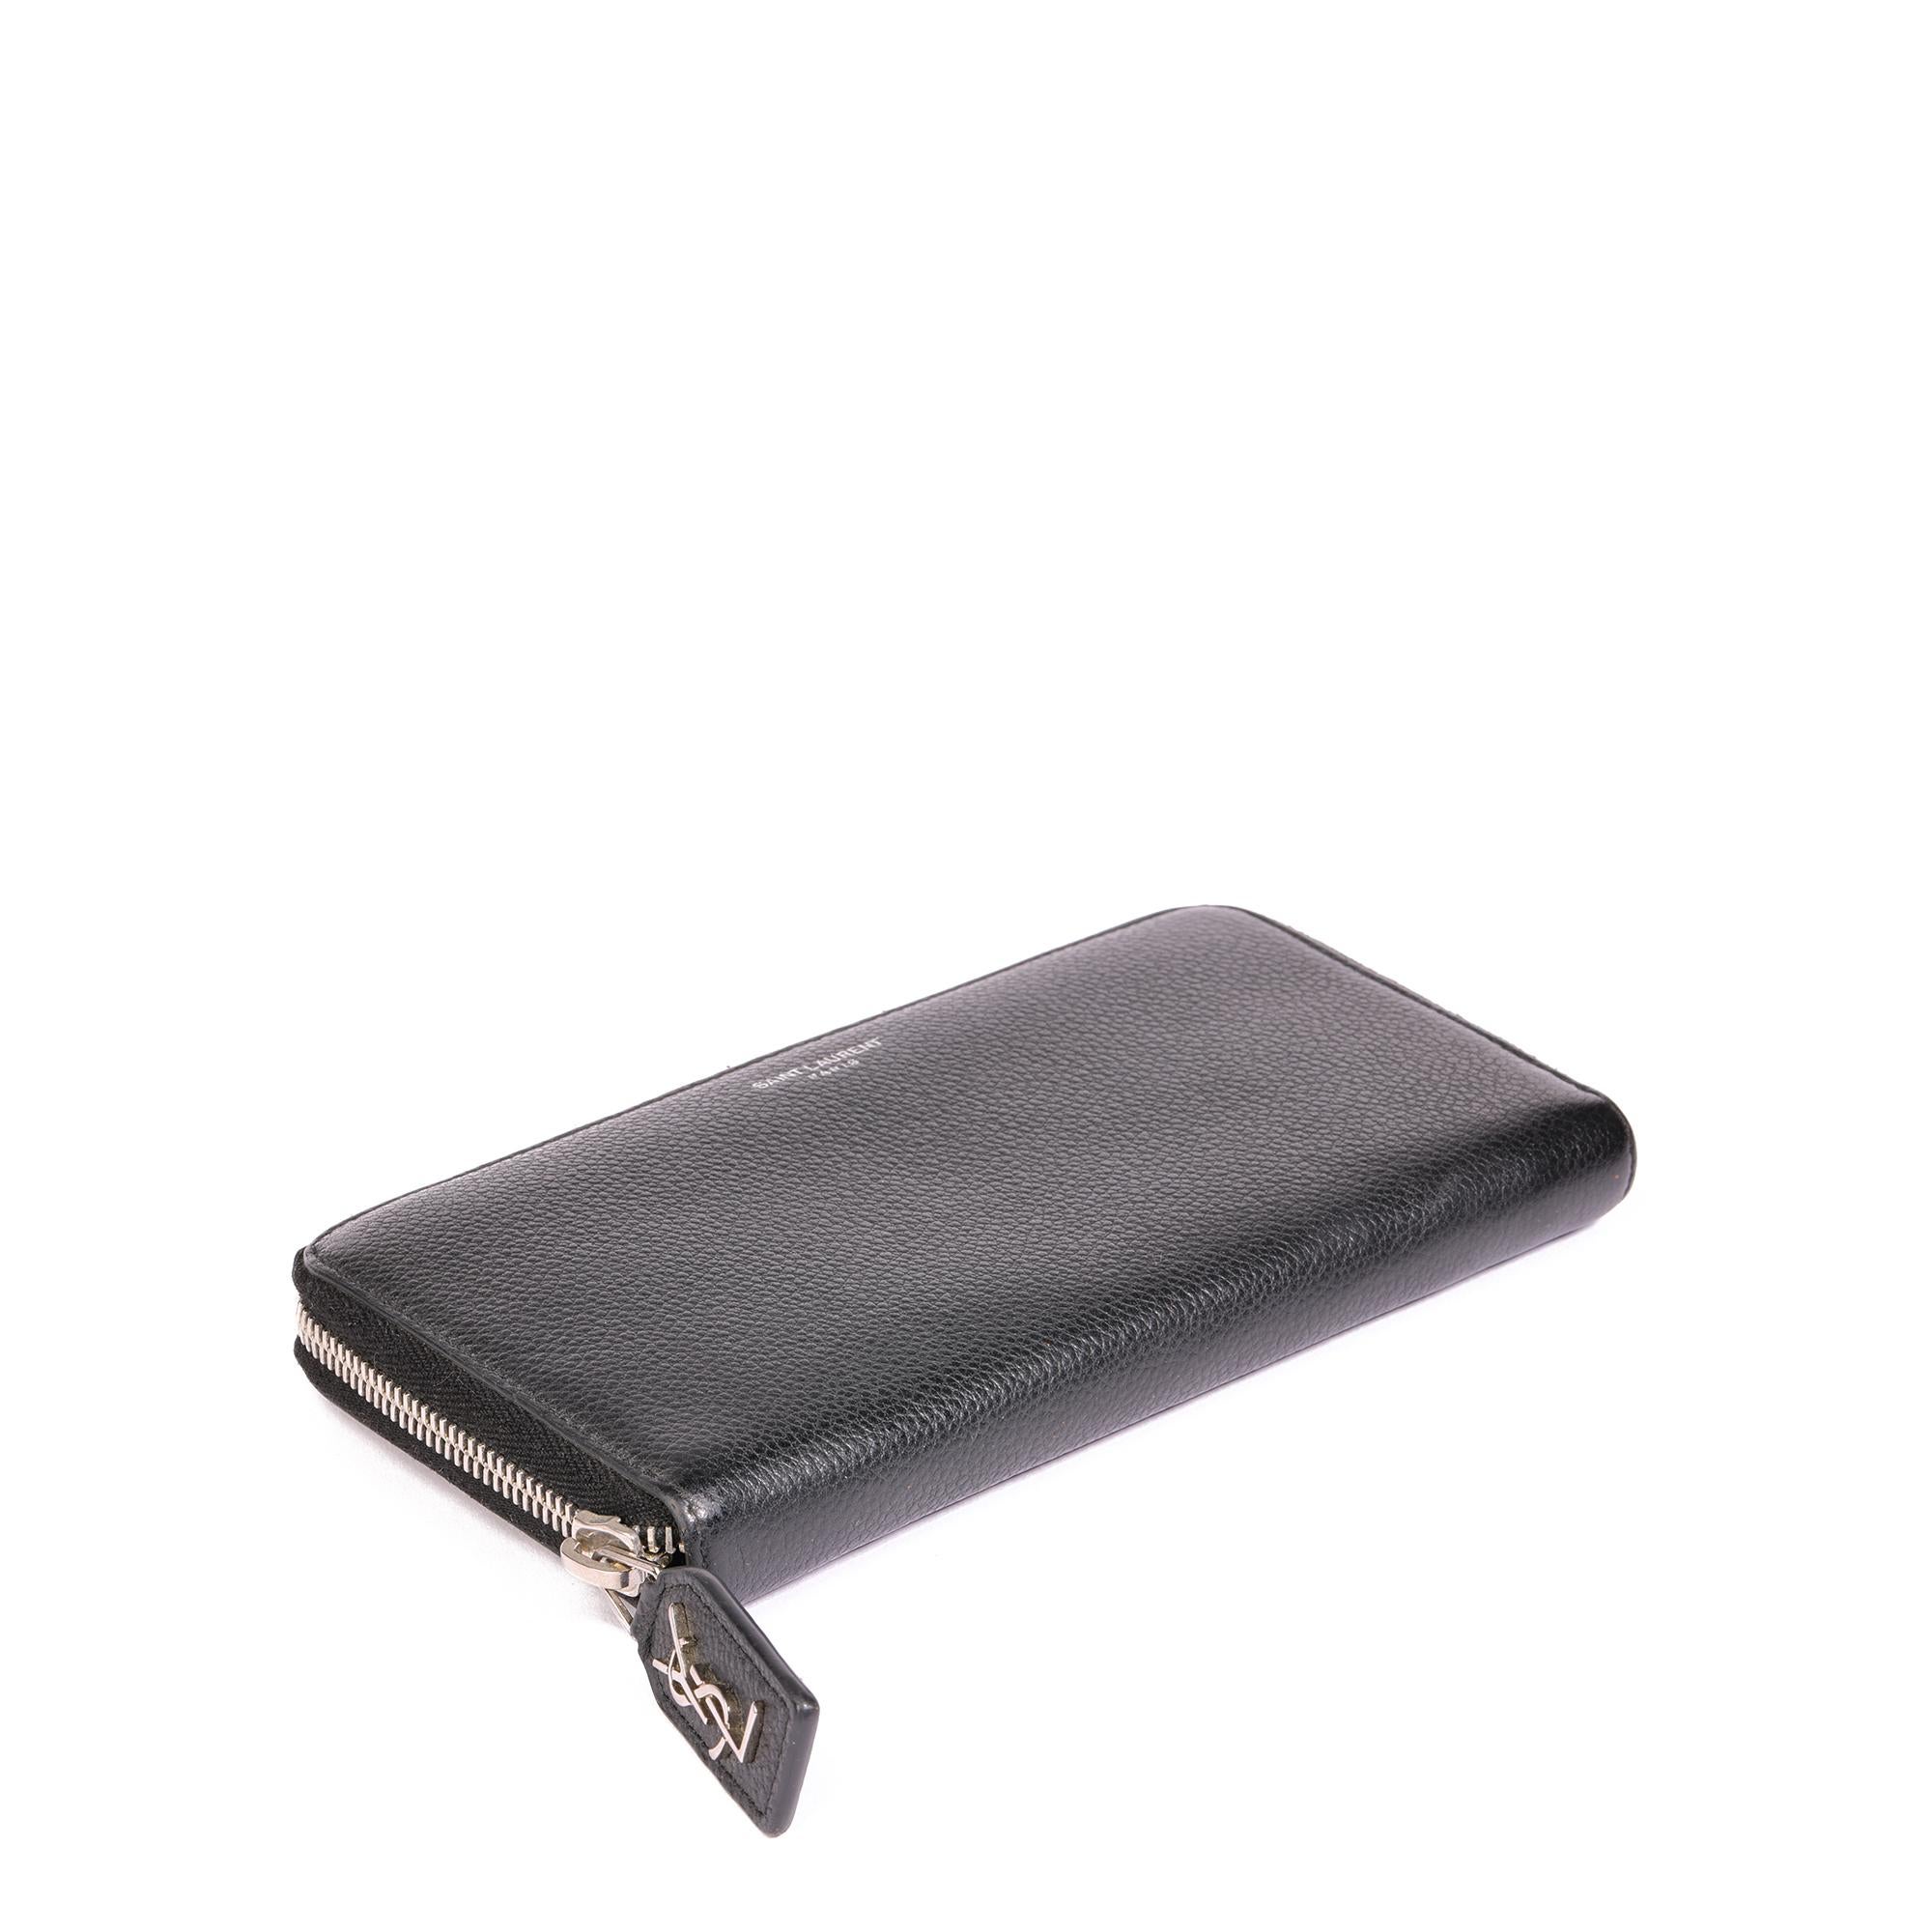 Saint Laurent Schwarz geprägte Gauche Continental Zip um Brieftasche

KONDITIONSNOTEN
Das Äußere ist in ausgezeichnetem Zustand mit leichten Gebrauchsspuren.
Der Innenraum ist in ausgezeichnetem Zustand mit leichten Gebrauchsspuren.
Die Hardware ist